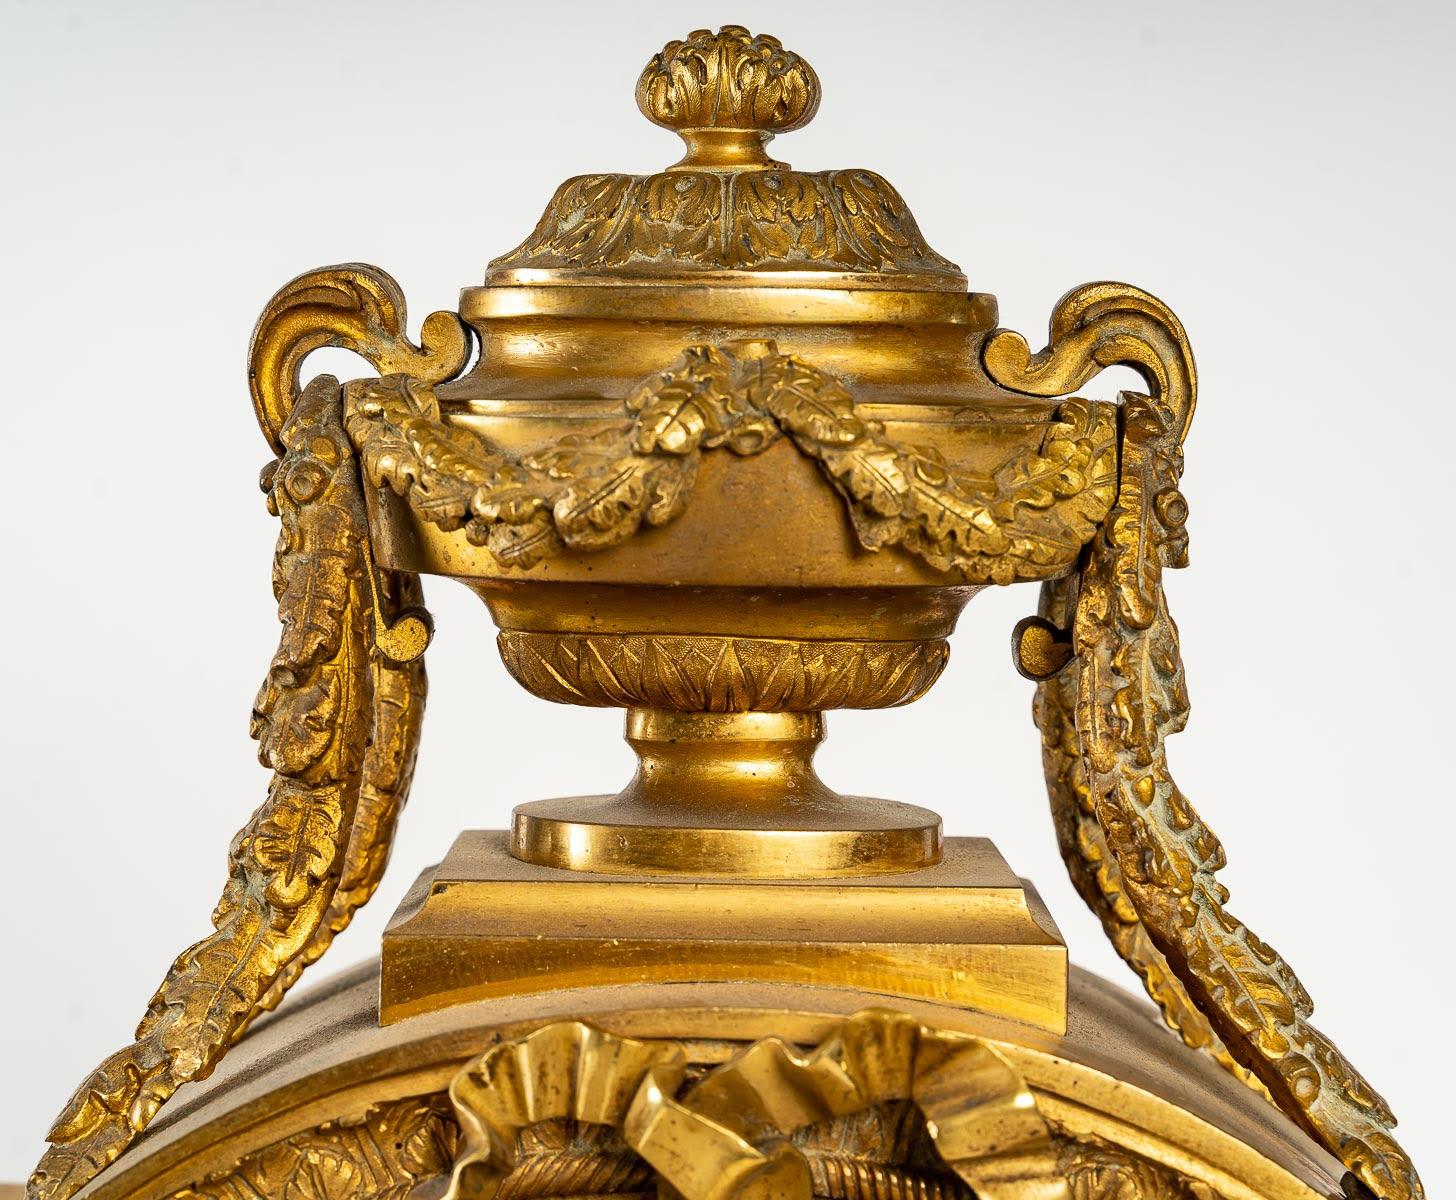 Uhr im Stil Louis XVI aus dem XIX.

Wichtige Uhr des XIX. Jahrhunderts im Stil Louis XVI, aus vergoldeter Bronze und Porzellan.

Abmessungen: H: 59cm, B: 42cm, T: 19cm.